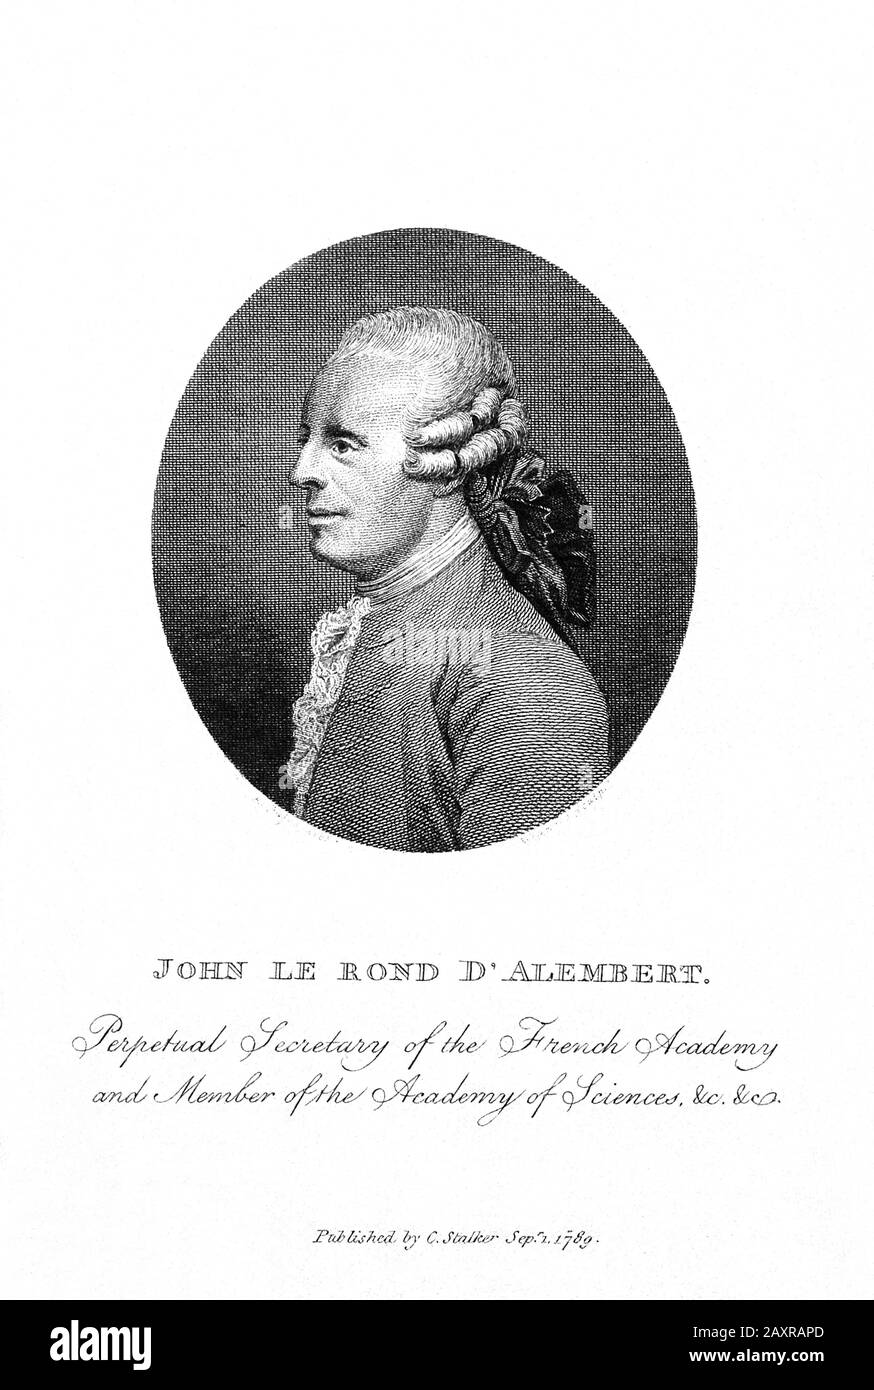 1783 CA , FRANCE : le célèbre mathématicien français , mécaniste , physicien , philosophe et théoricien de la musique JEAN LE ROND d'ALEMBERT ( 1717 – 1783 ) . Portrait gravé en 1789 publié par C. Stalker , Londres . Jusqu'en 1759, il est également co-rédacteur en chef avec Denis Diderot de l'Encyclopédie. - ALEMBERT - ILLUMINISTA - ILLUMINISM - ENCICLOPEDIA - ENCICLOPEDISTA - ILLUMNINISMO - ILLUMINISM - FILOSOFO - FILOSOFIA - PHILOSOPHIE - perrucca - col - coletto - profilo - profil - incisione - gravure - illustratif - illustratif - Dalembert - Archibert - Alembert - Alembert - Alembert - Alembert - Alembert - Alembert - Alembert - Alembert - Alembert - Illetto Banque D'Images